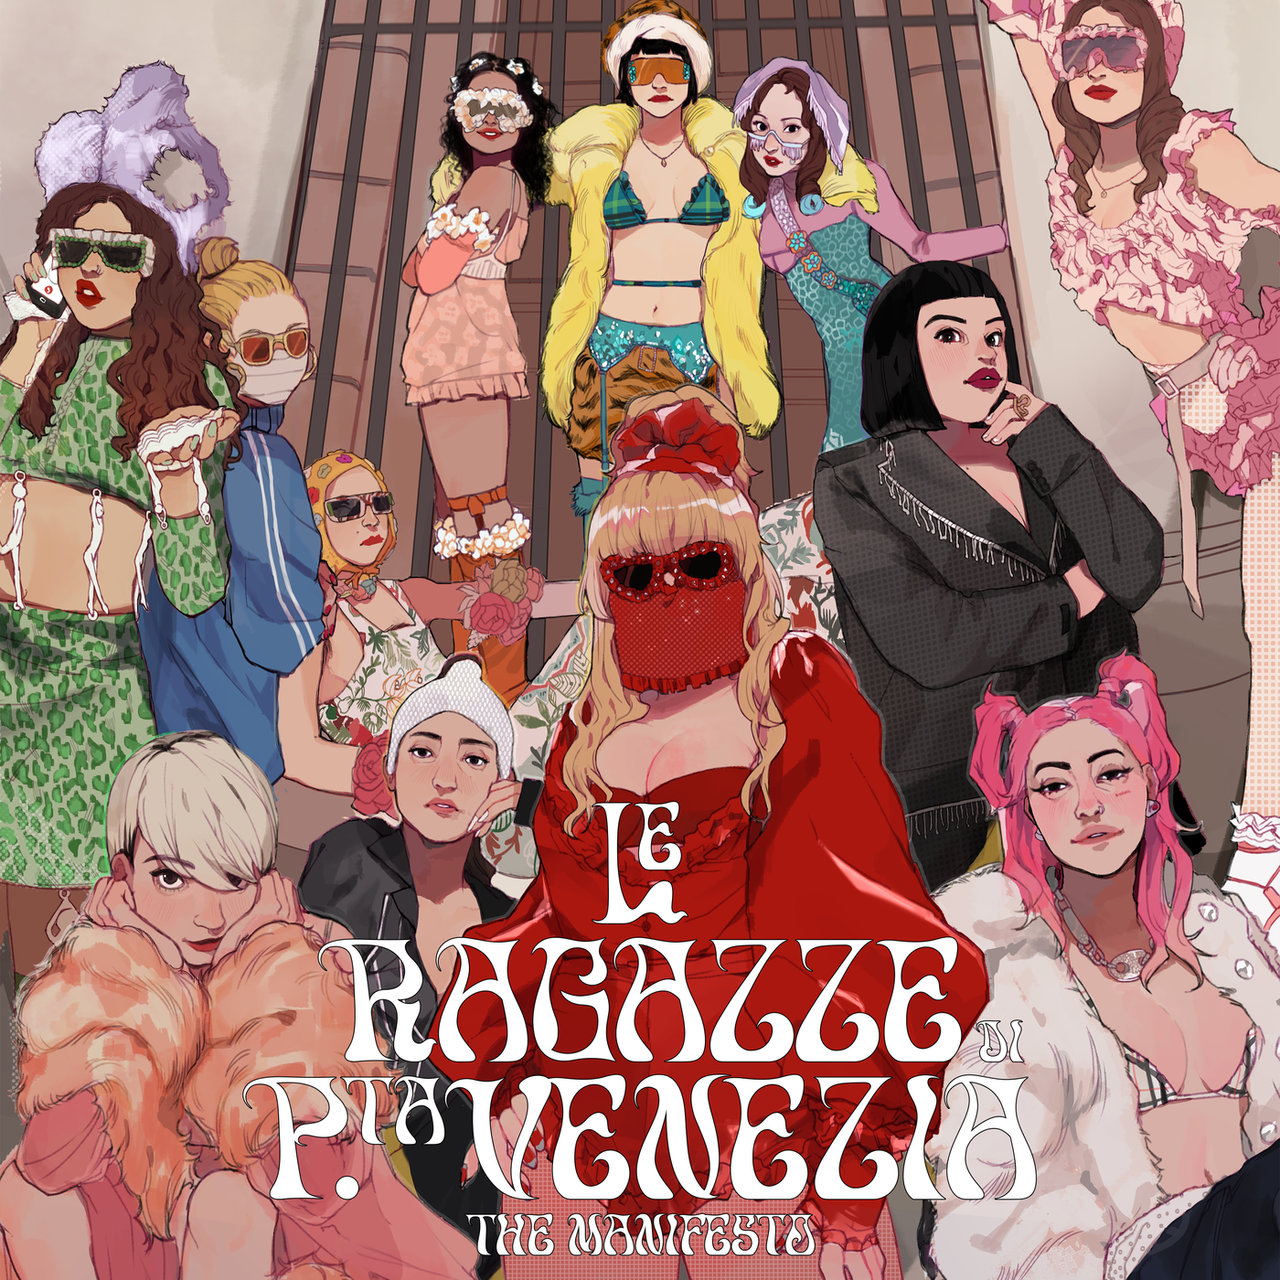 M¥SS KETA featuring Elodie, La Pina, Priestess, Roshelle, & Joan Thiele — LE RAGAZZE DI PORTA VENEZIA - THE MANIFESTO cover artwork